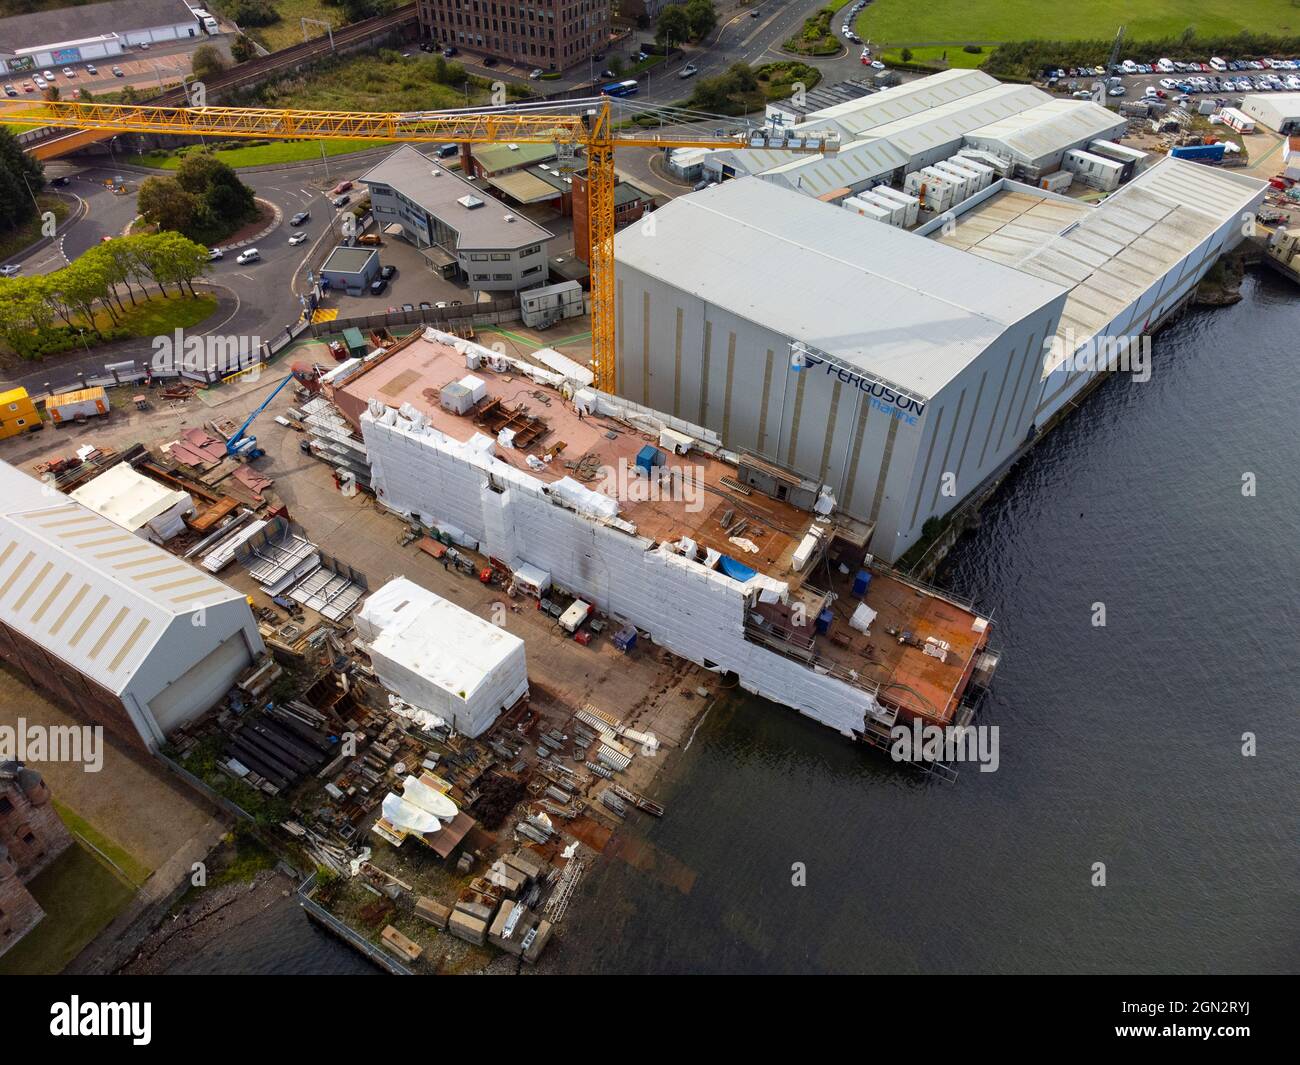 Port Glasgow, 21 settembre 2021. Vista aerea del traghetto senza nome Hull 802 in costruzione presso il cantiere navale Ferguson Marine sul fiume Clyde a Port Glasgow Foto Stock